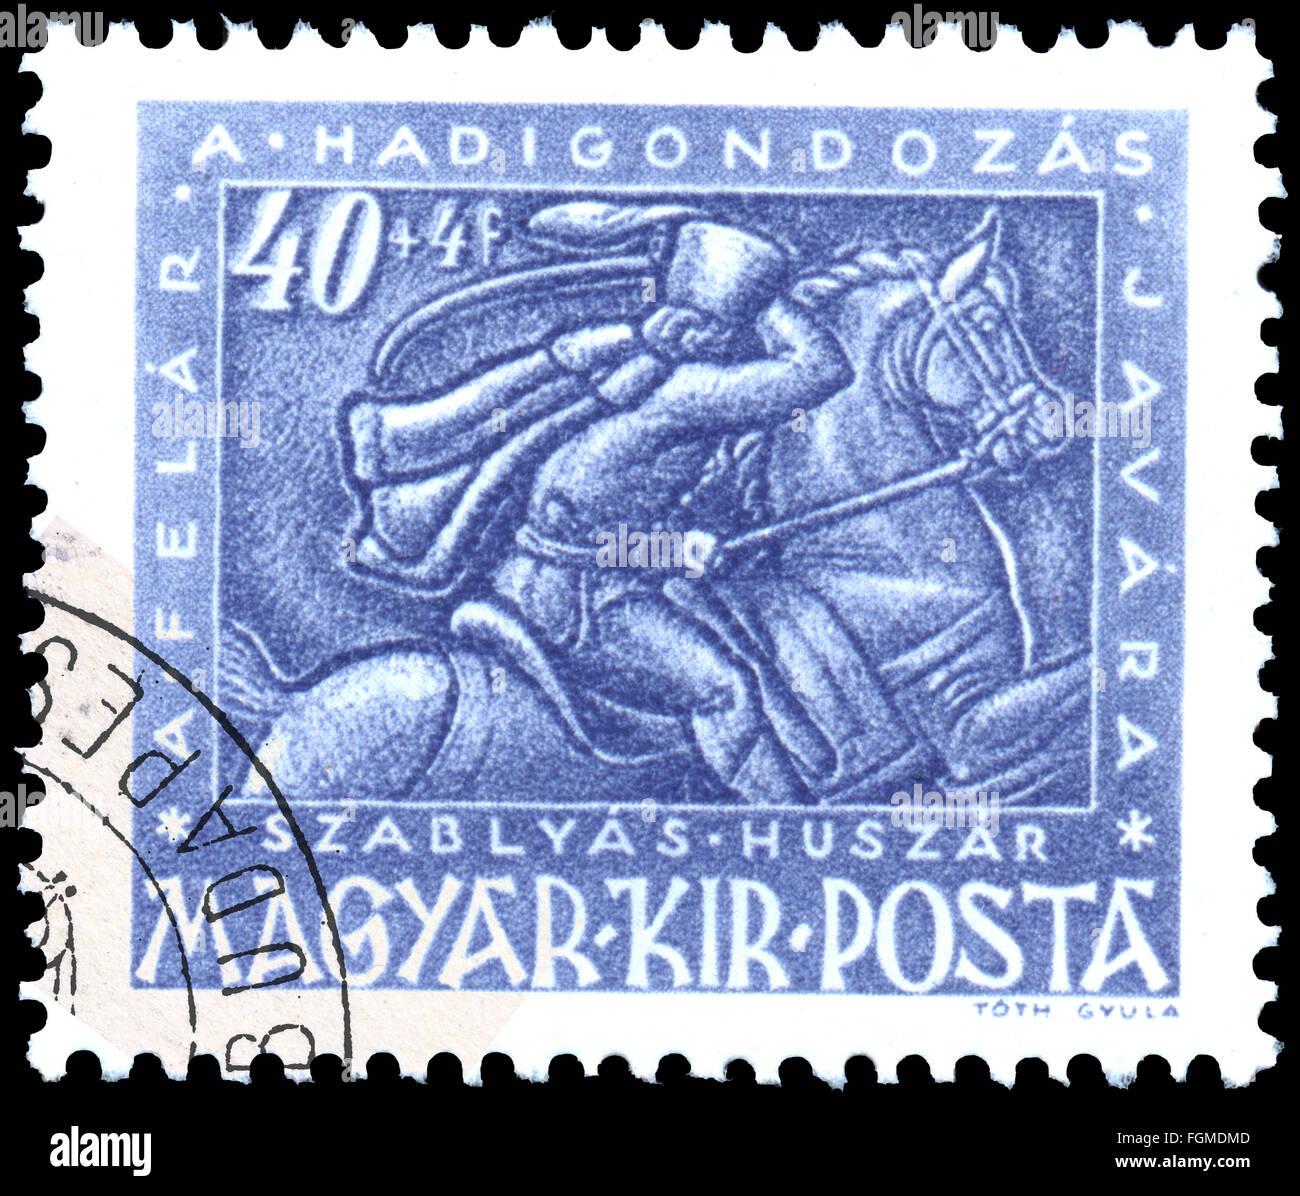 BUDAPEST, Ungarn - 3. Februar 2016: eine Briefmarke gedruckt von Ungarn, zeigt Galant zu Pferd, ca. 1943 Stockfoto